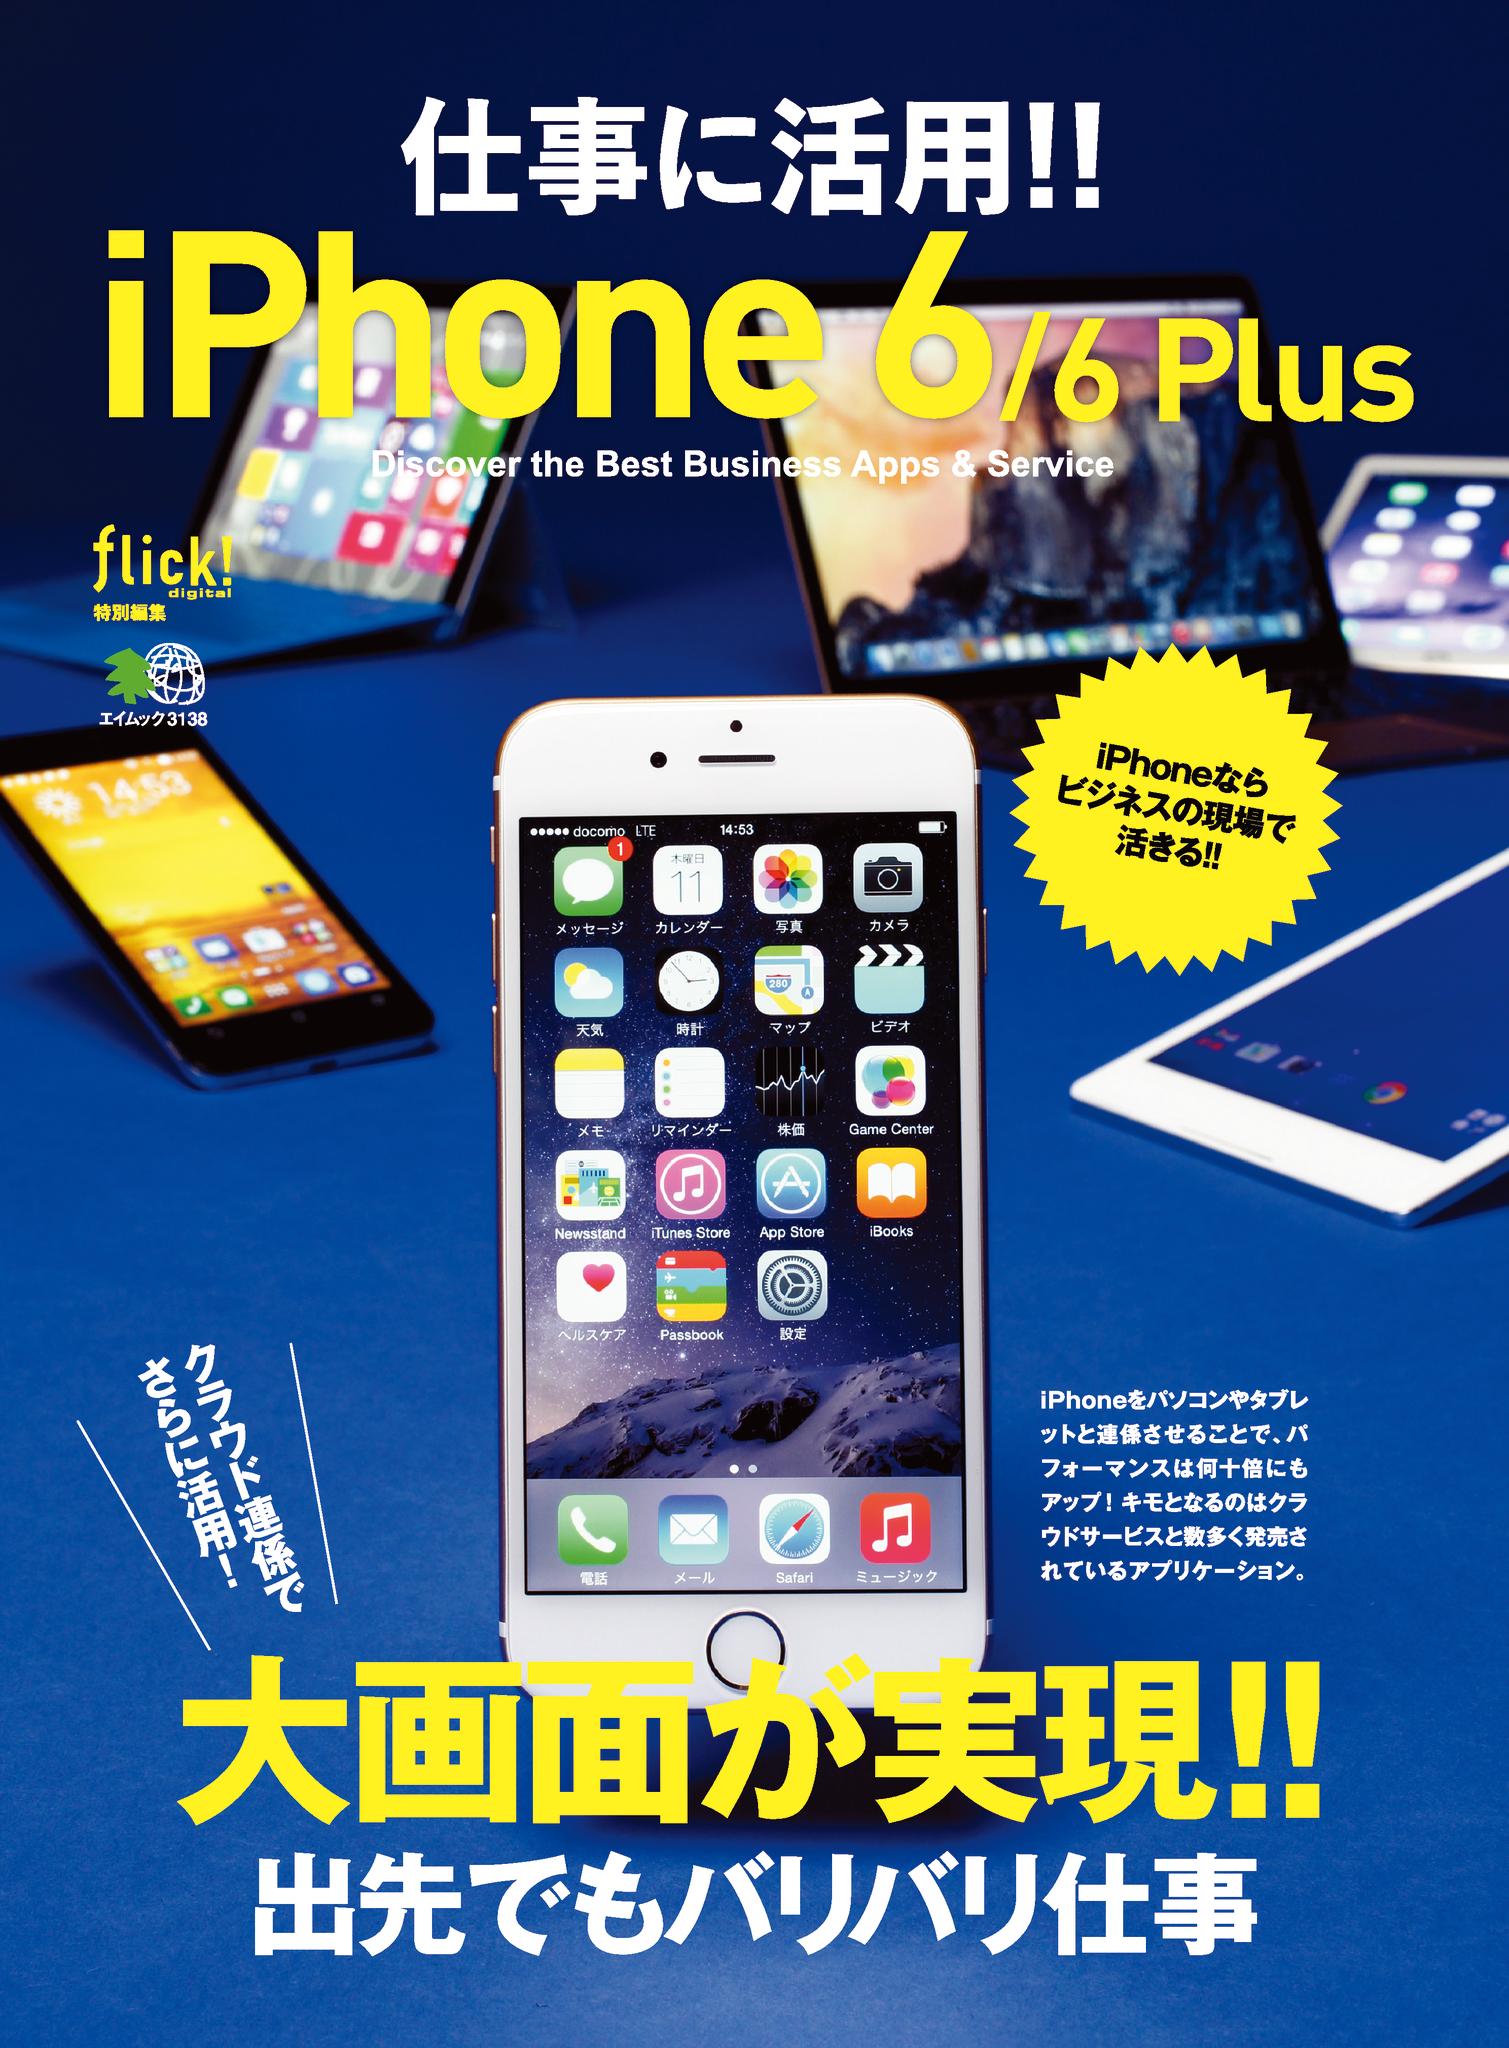 仕事に活用!!iPhone6/6Plus